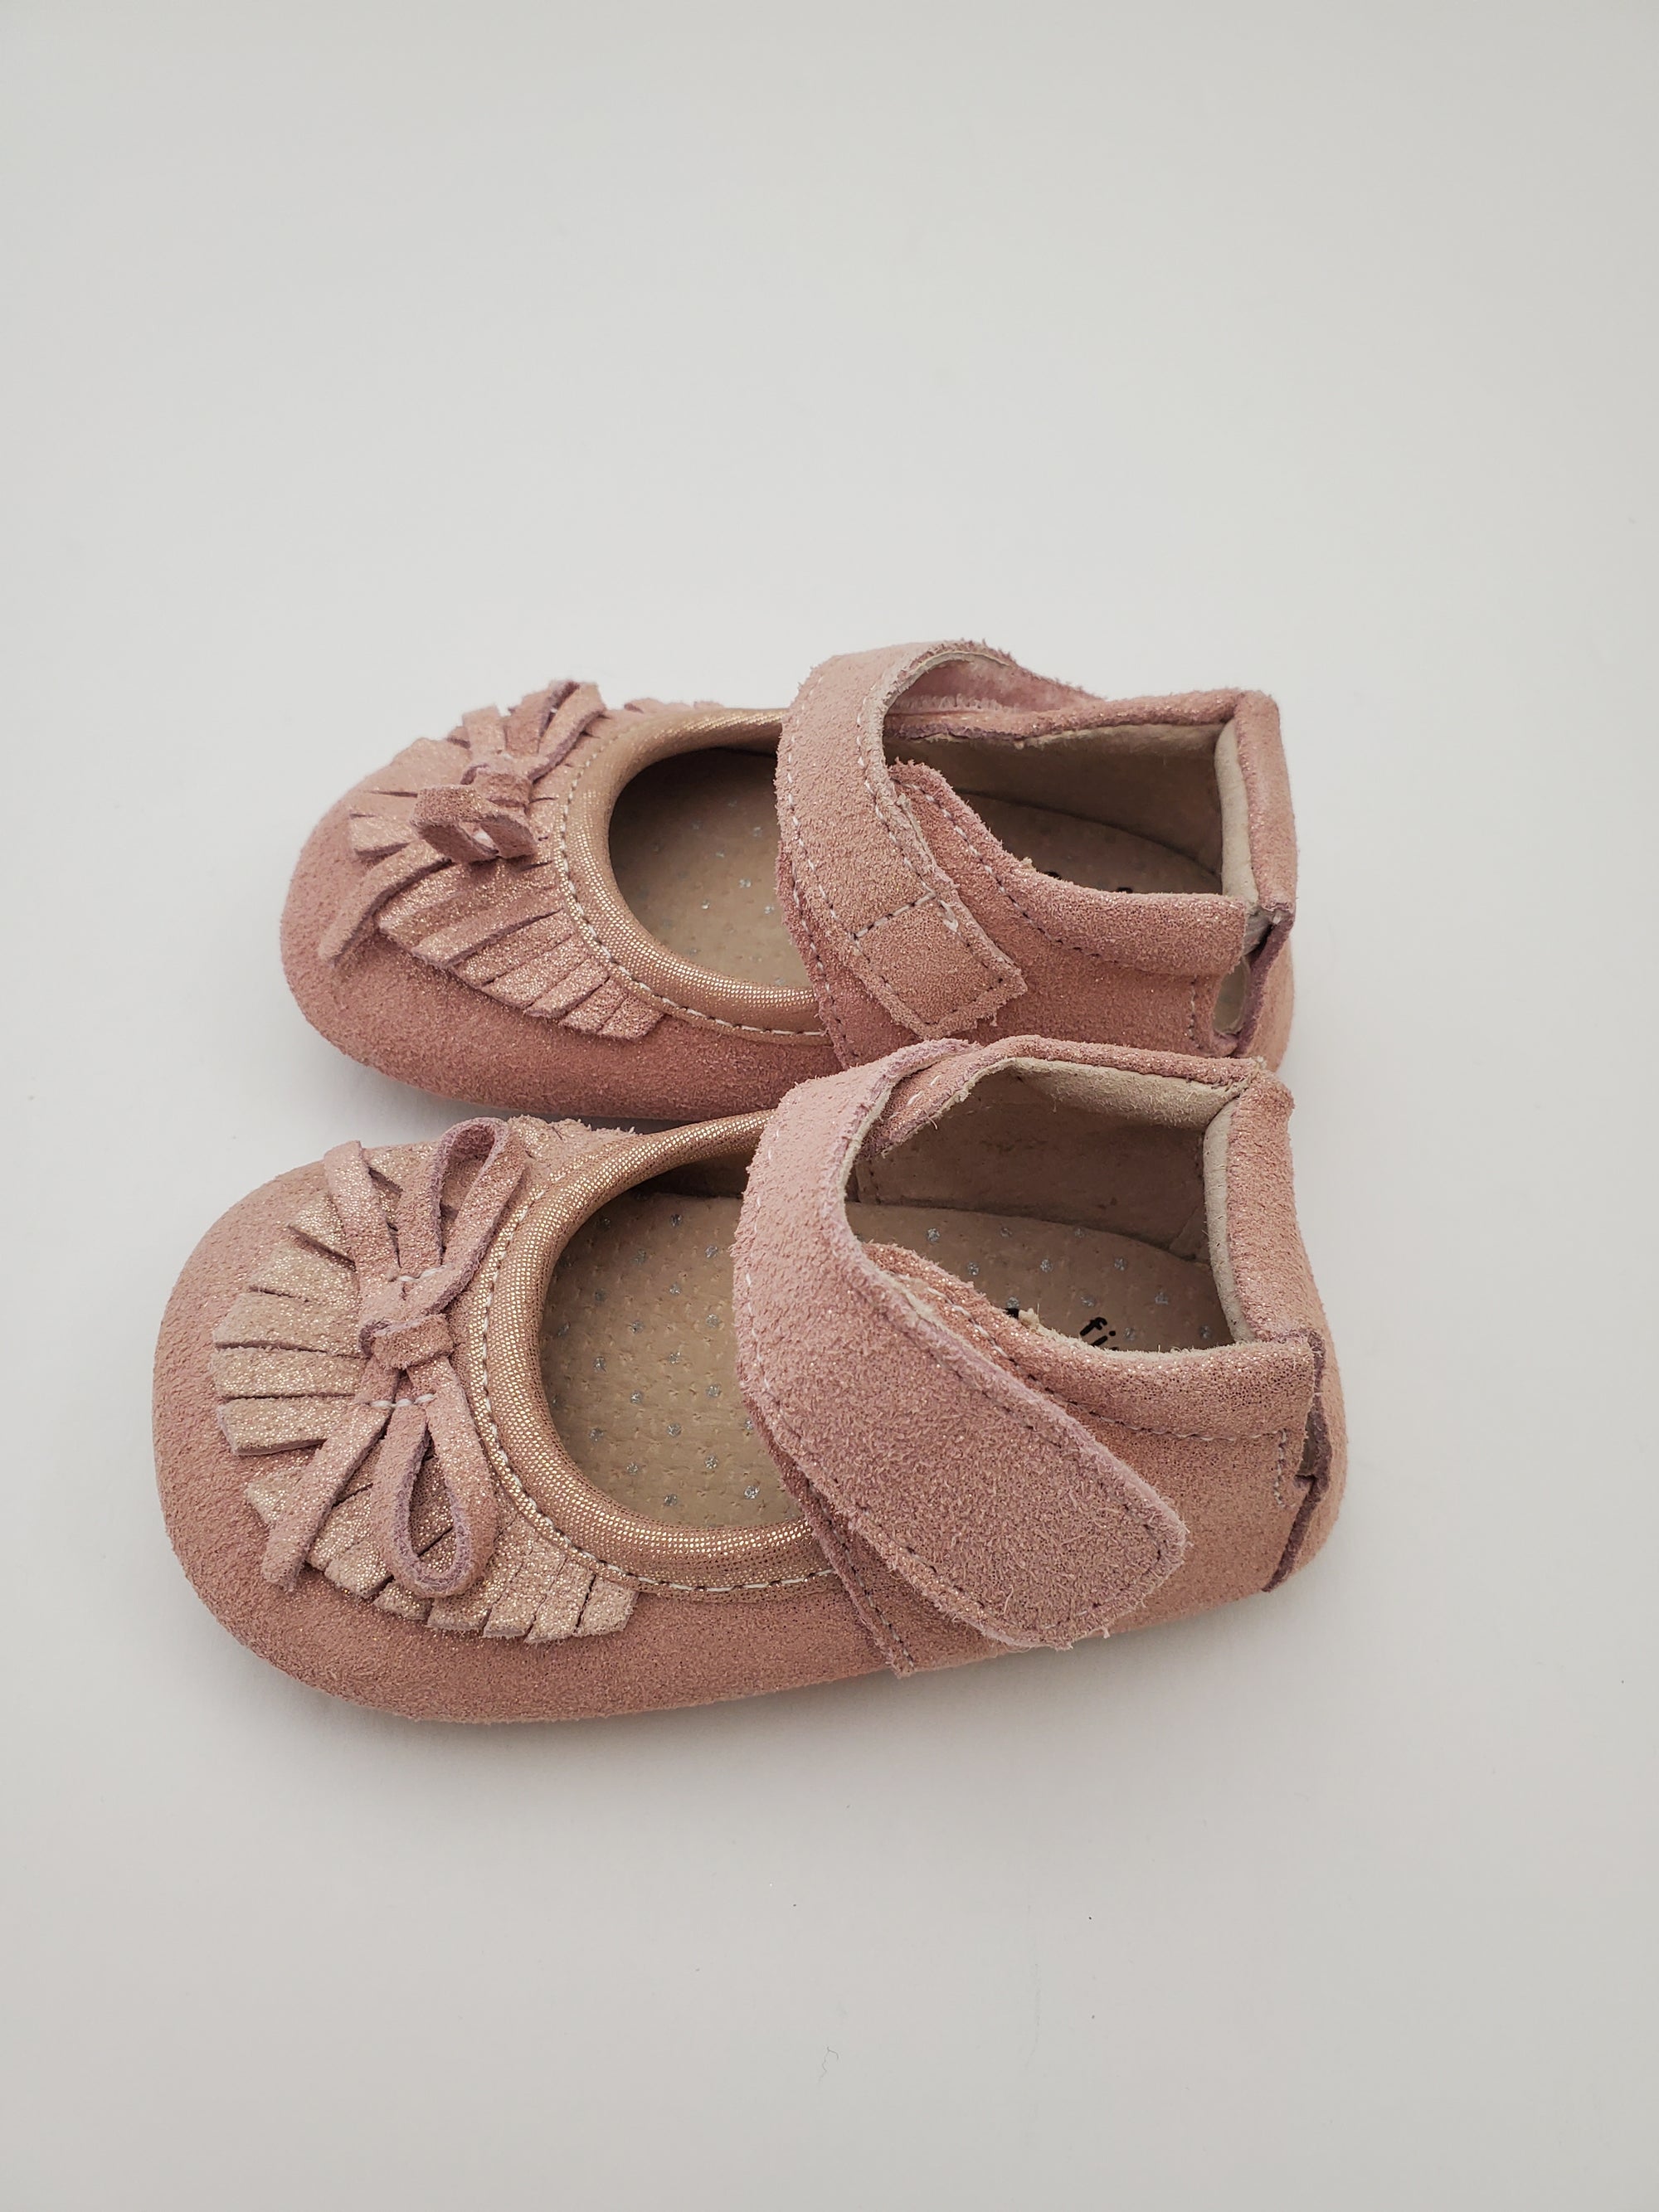 Livie & Luca Willow Crib Shoe in Desert Rose Shimmer